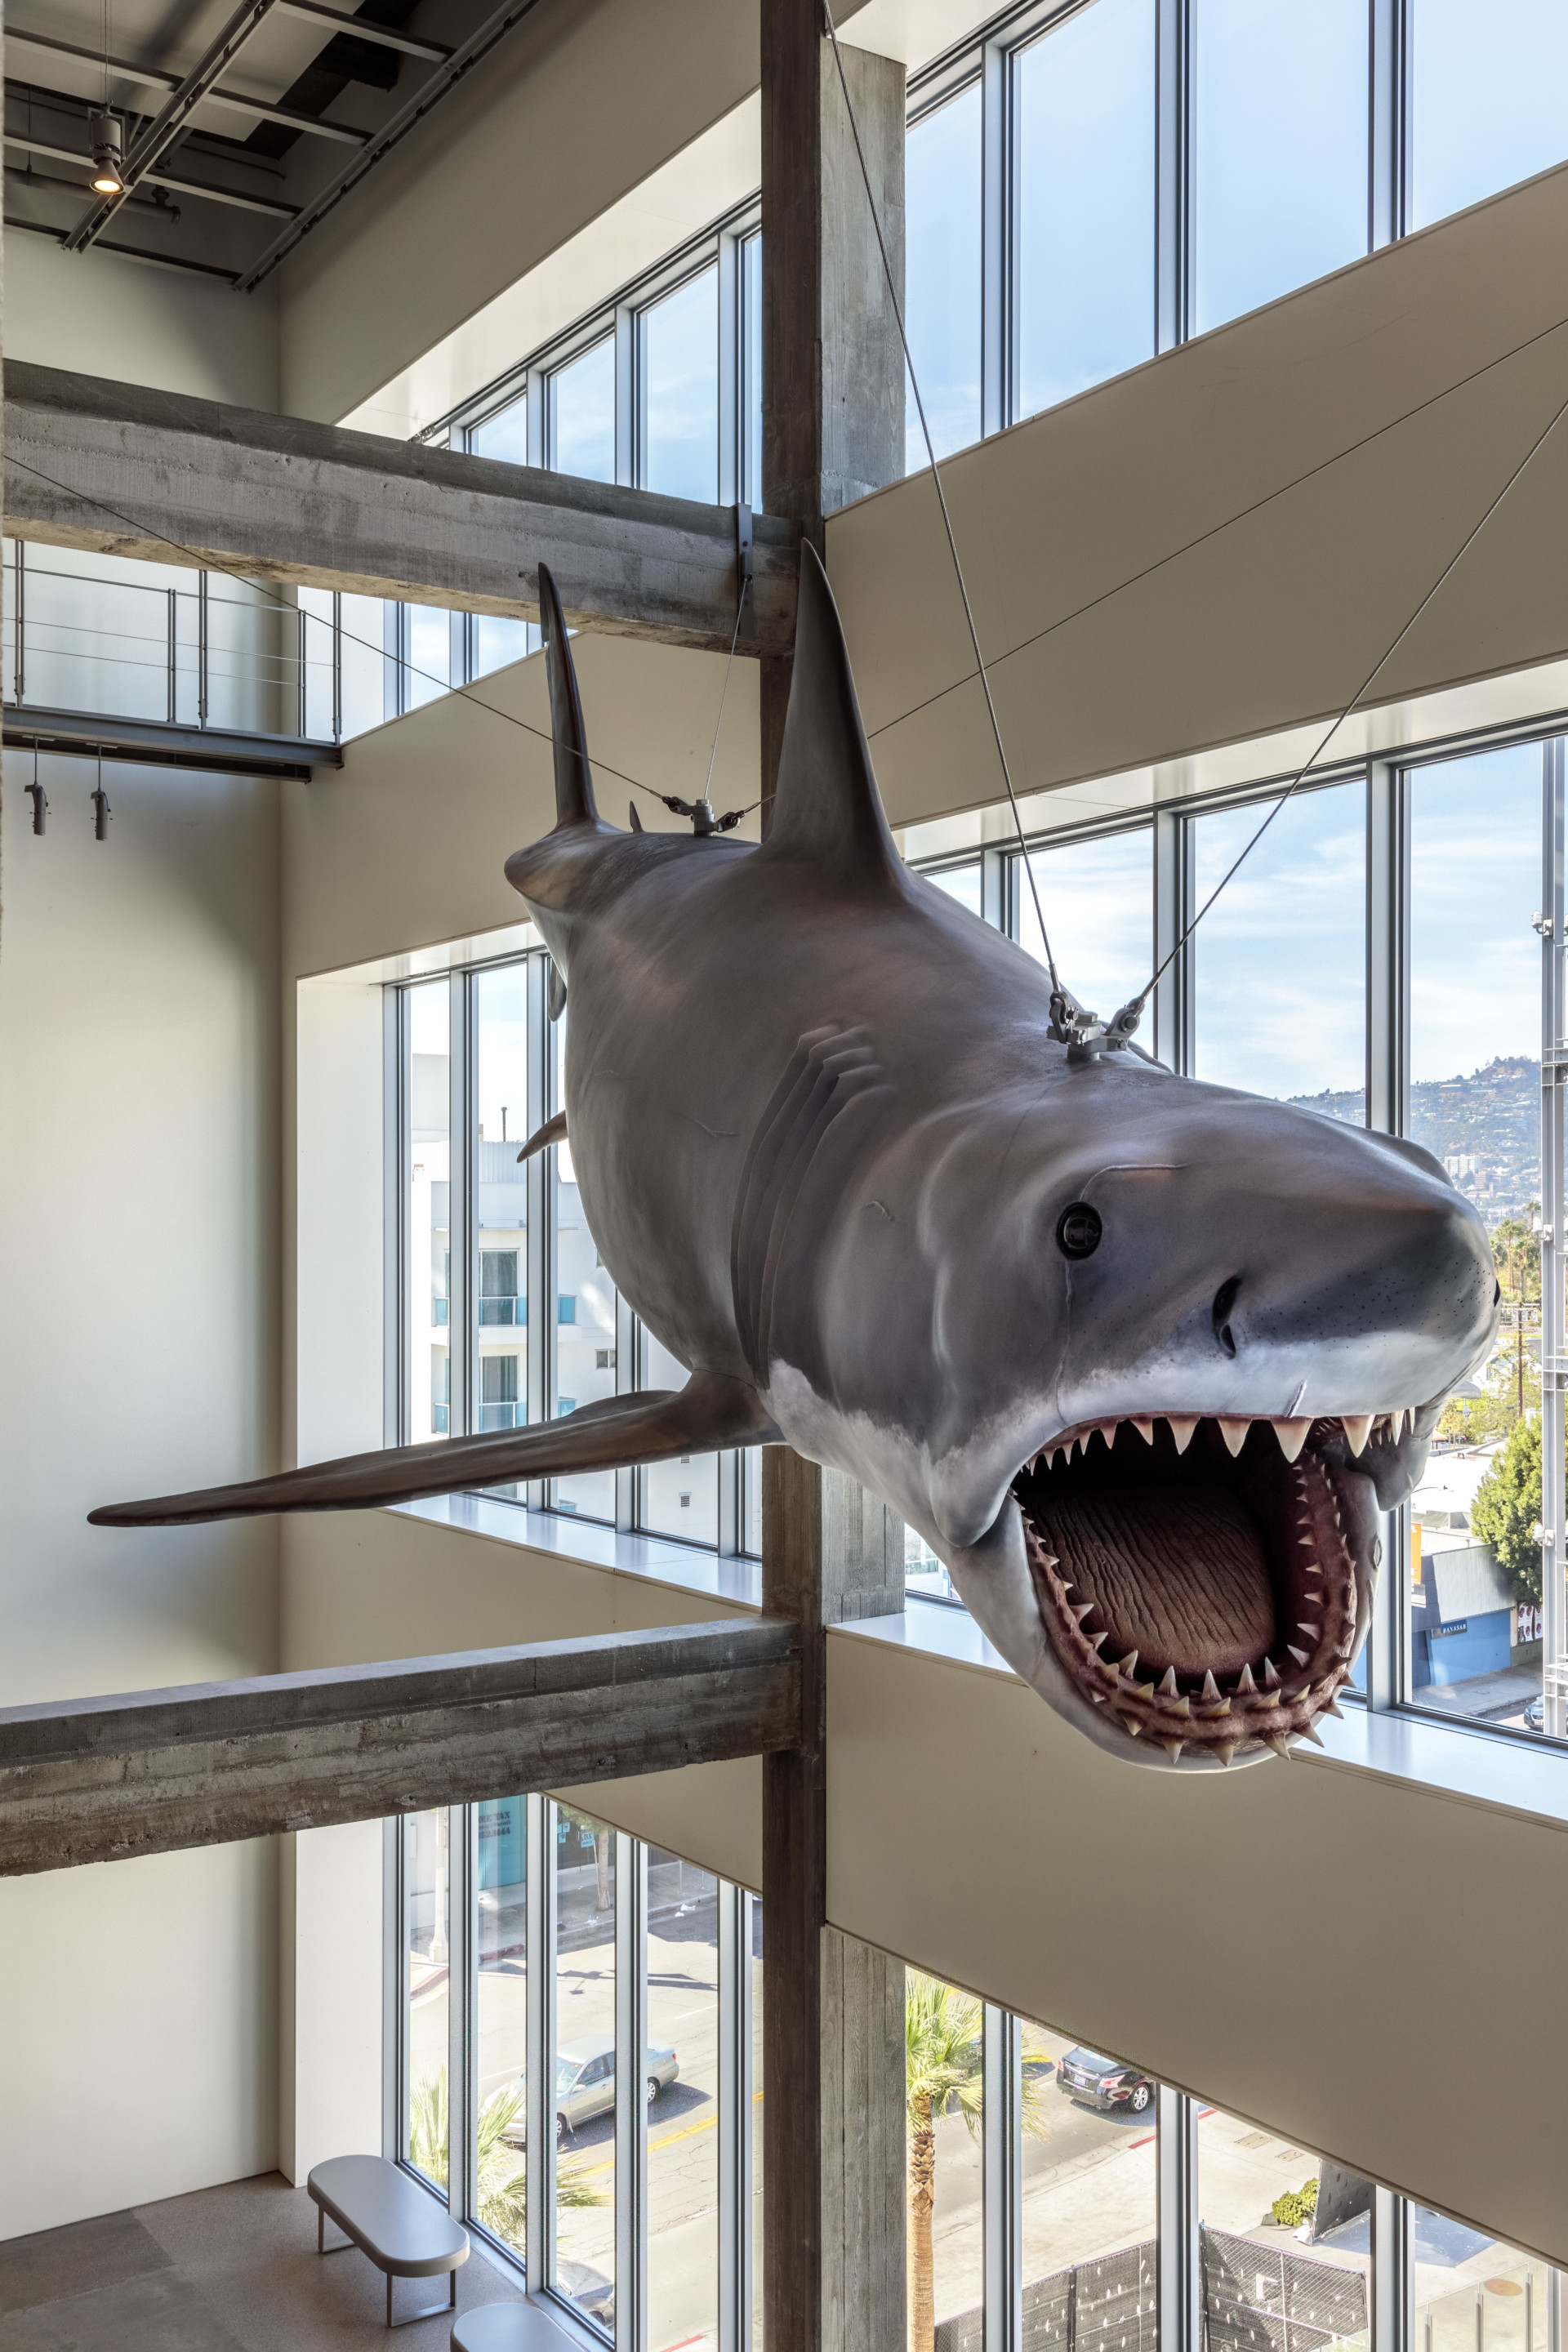 La foto muestra un tiburón animatrónico flotante en el museo.